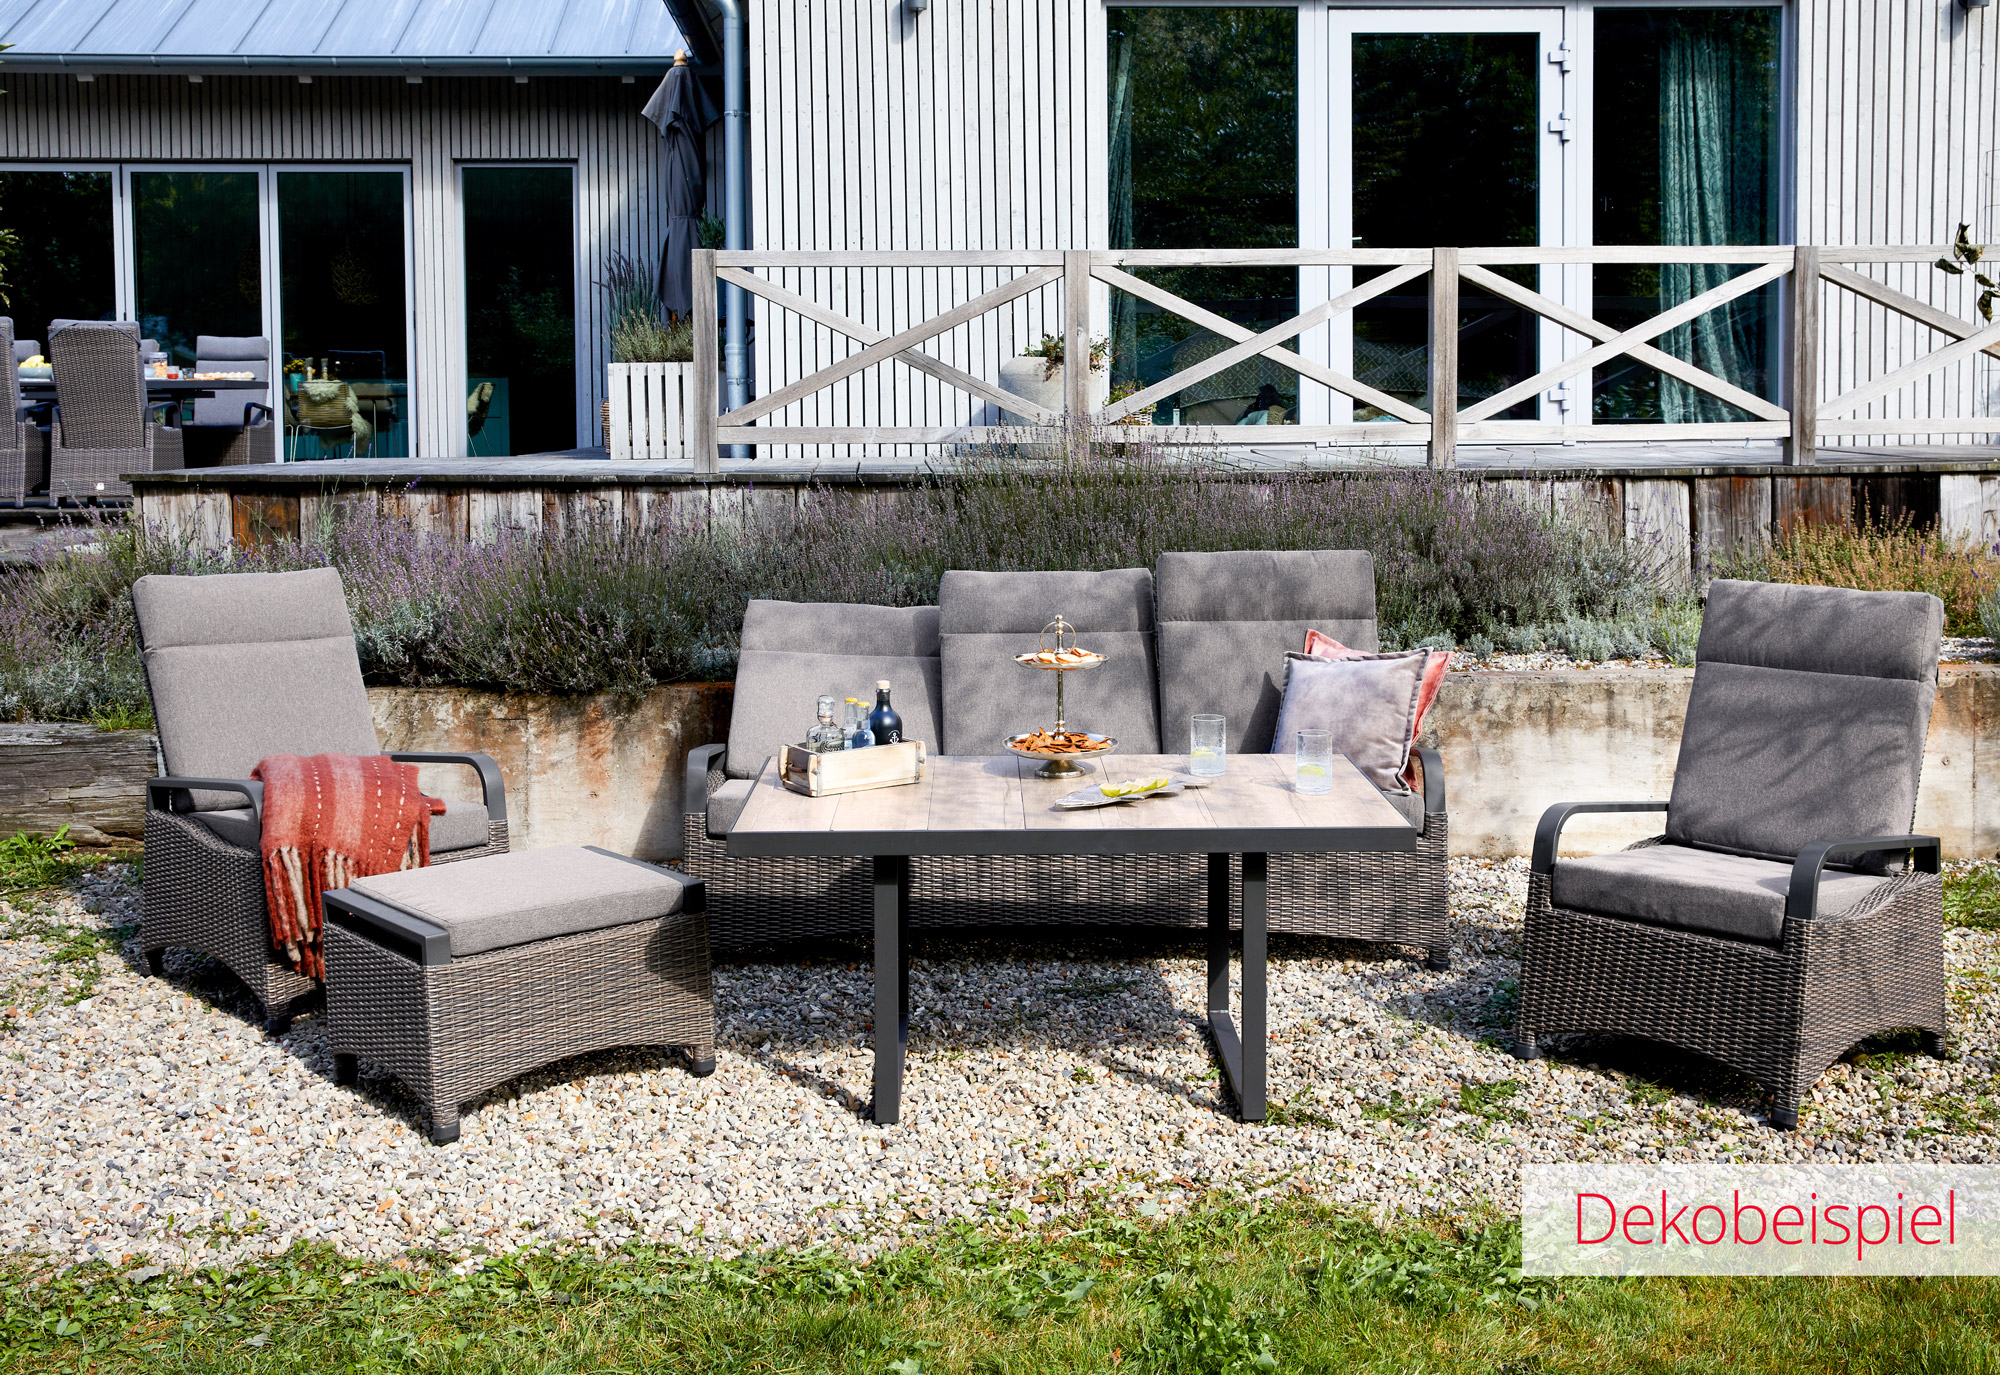 LC Garden »Komido« 3-Sitzer Sofa omega braun 89x205x105cm Dreisitzer aus handgeflochtenem Polyrattan inkl. Sitzkissen